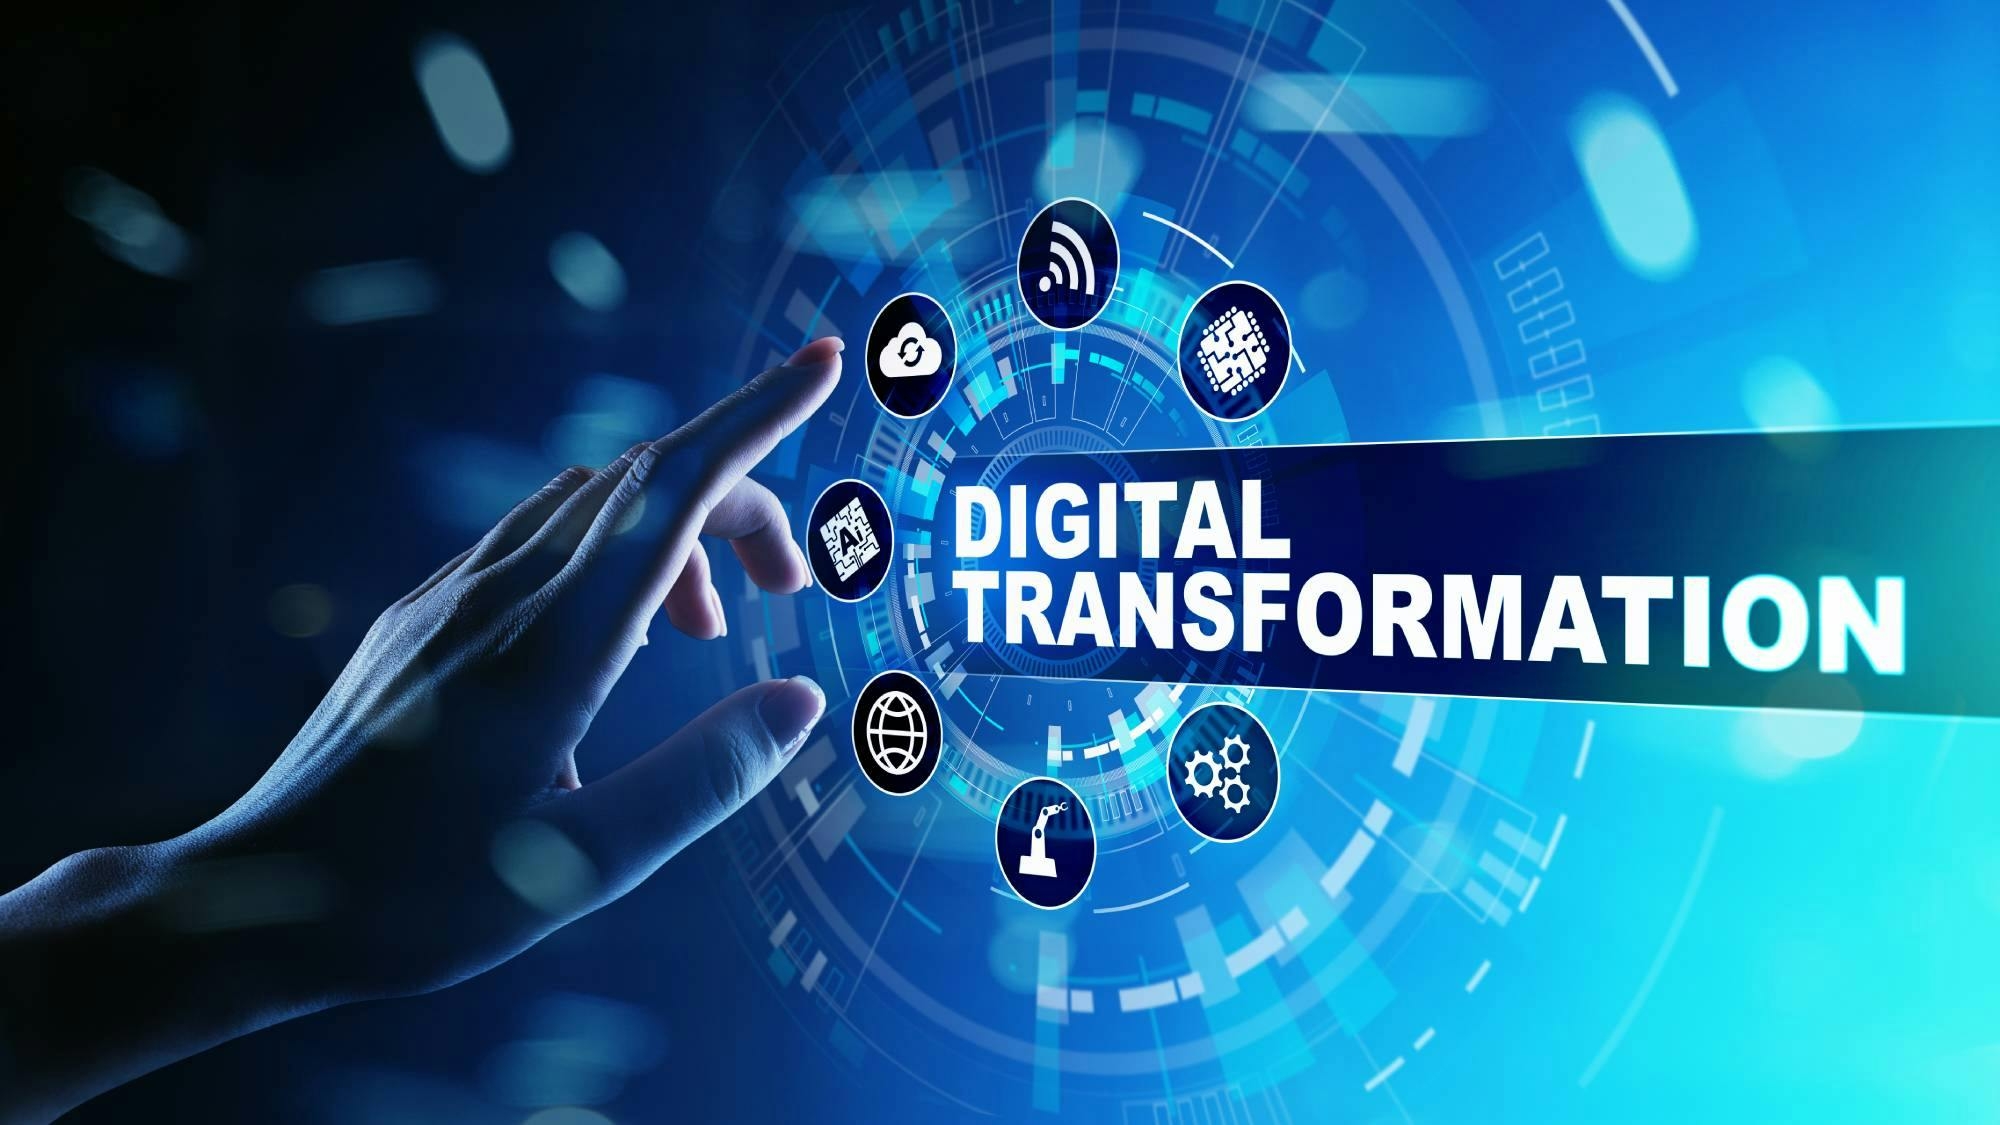 Imagen de una mano tocando algunos iconos relacionados a la transformación digital.